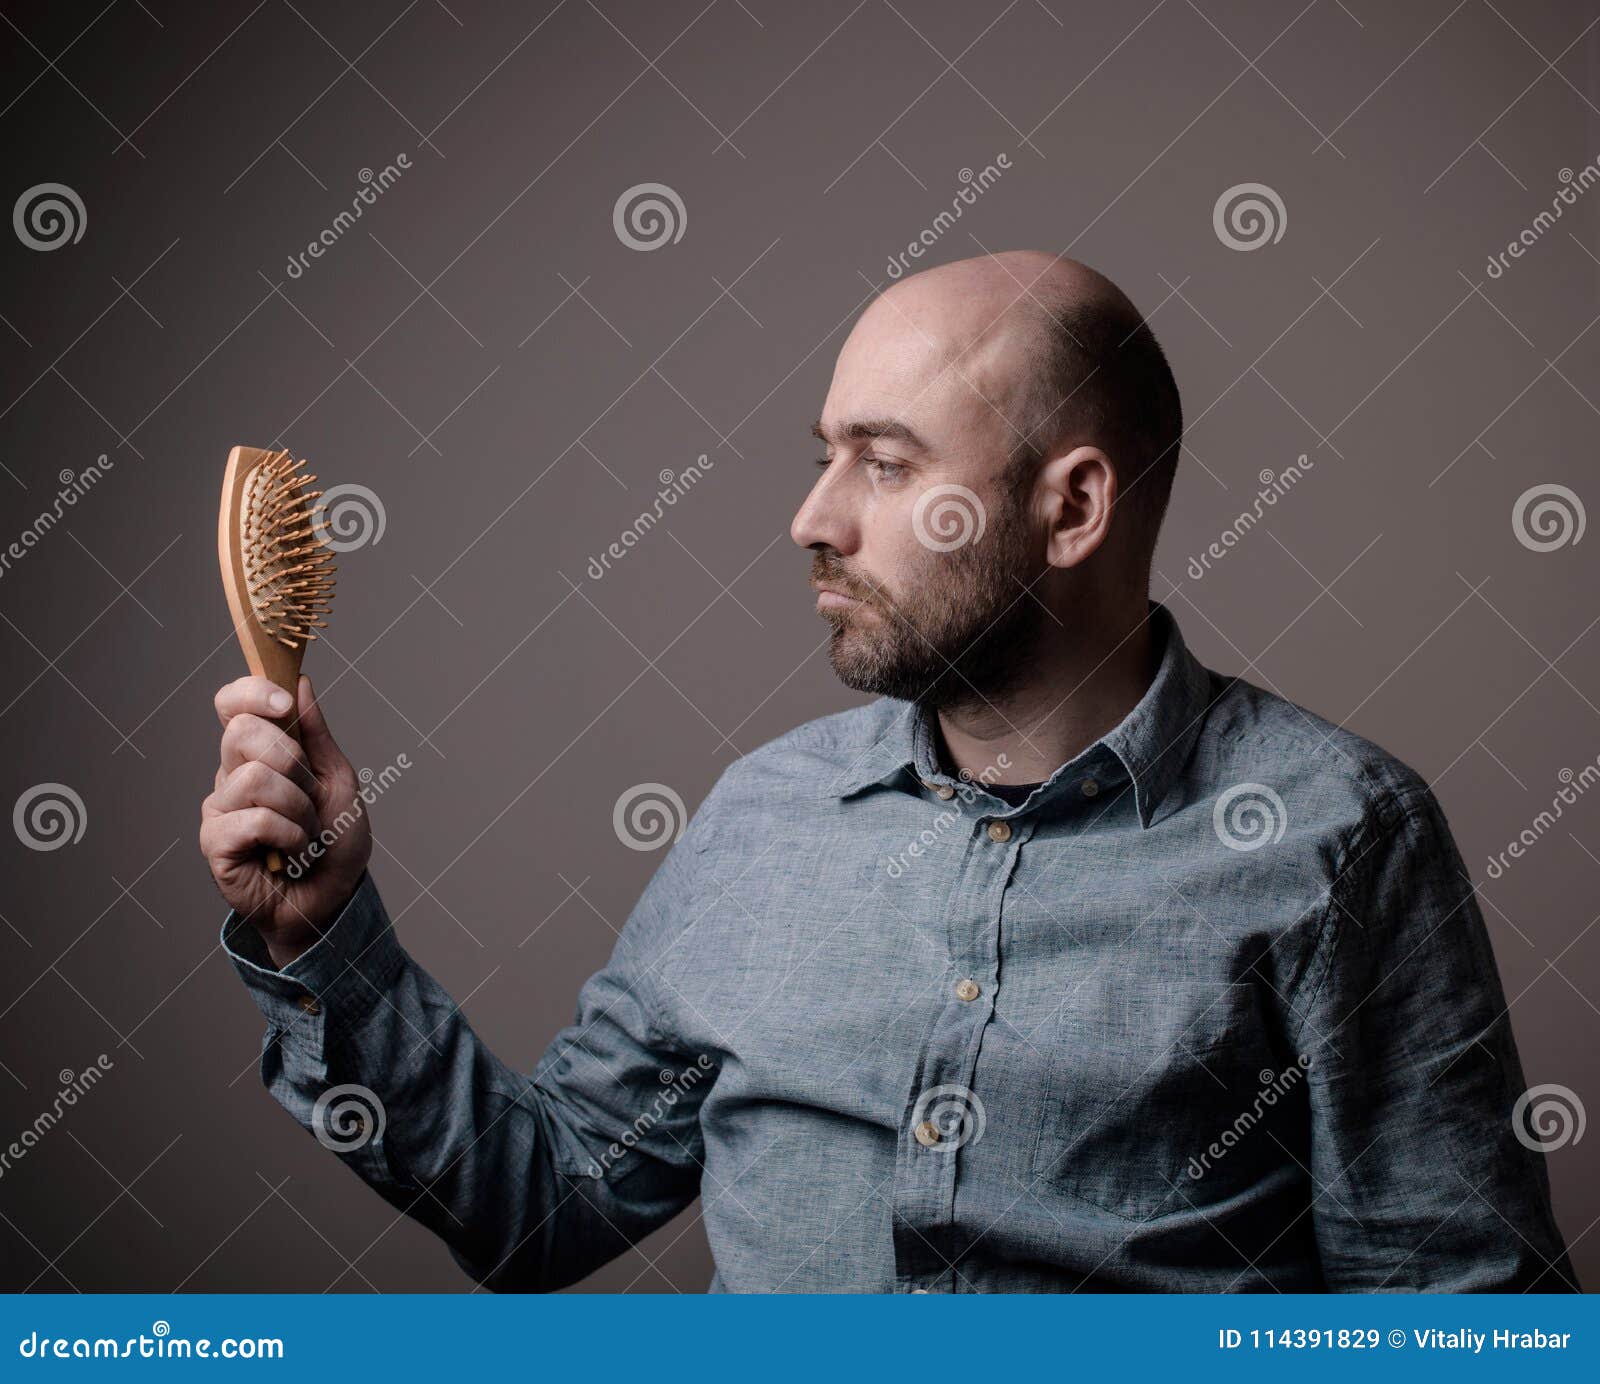 Homme Chauve Confus Avec La Brosse De Cheveux Image stock - Image du  émotion, moyen: 114391829